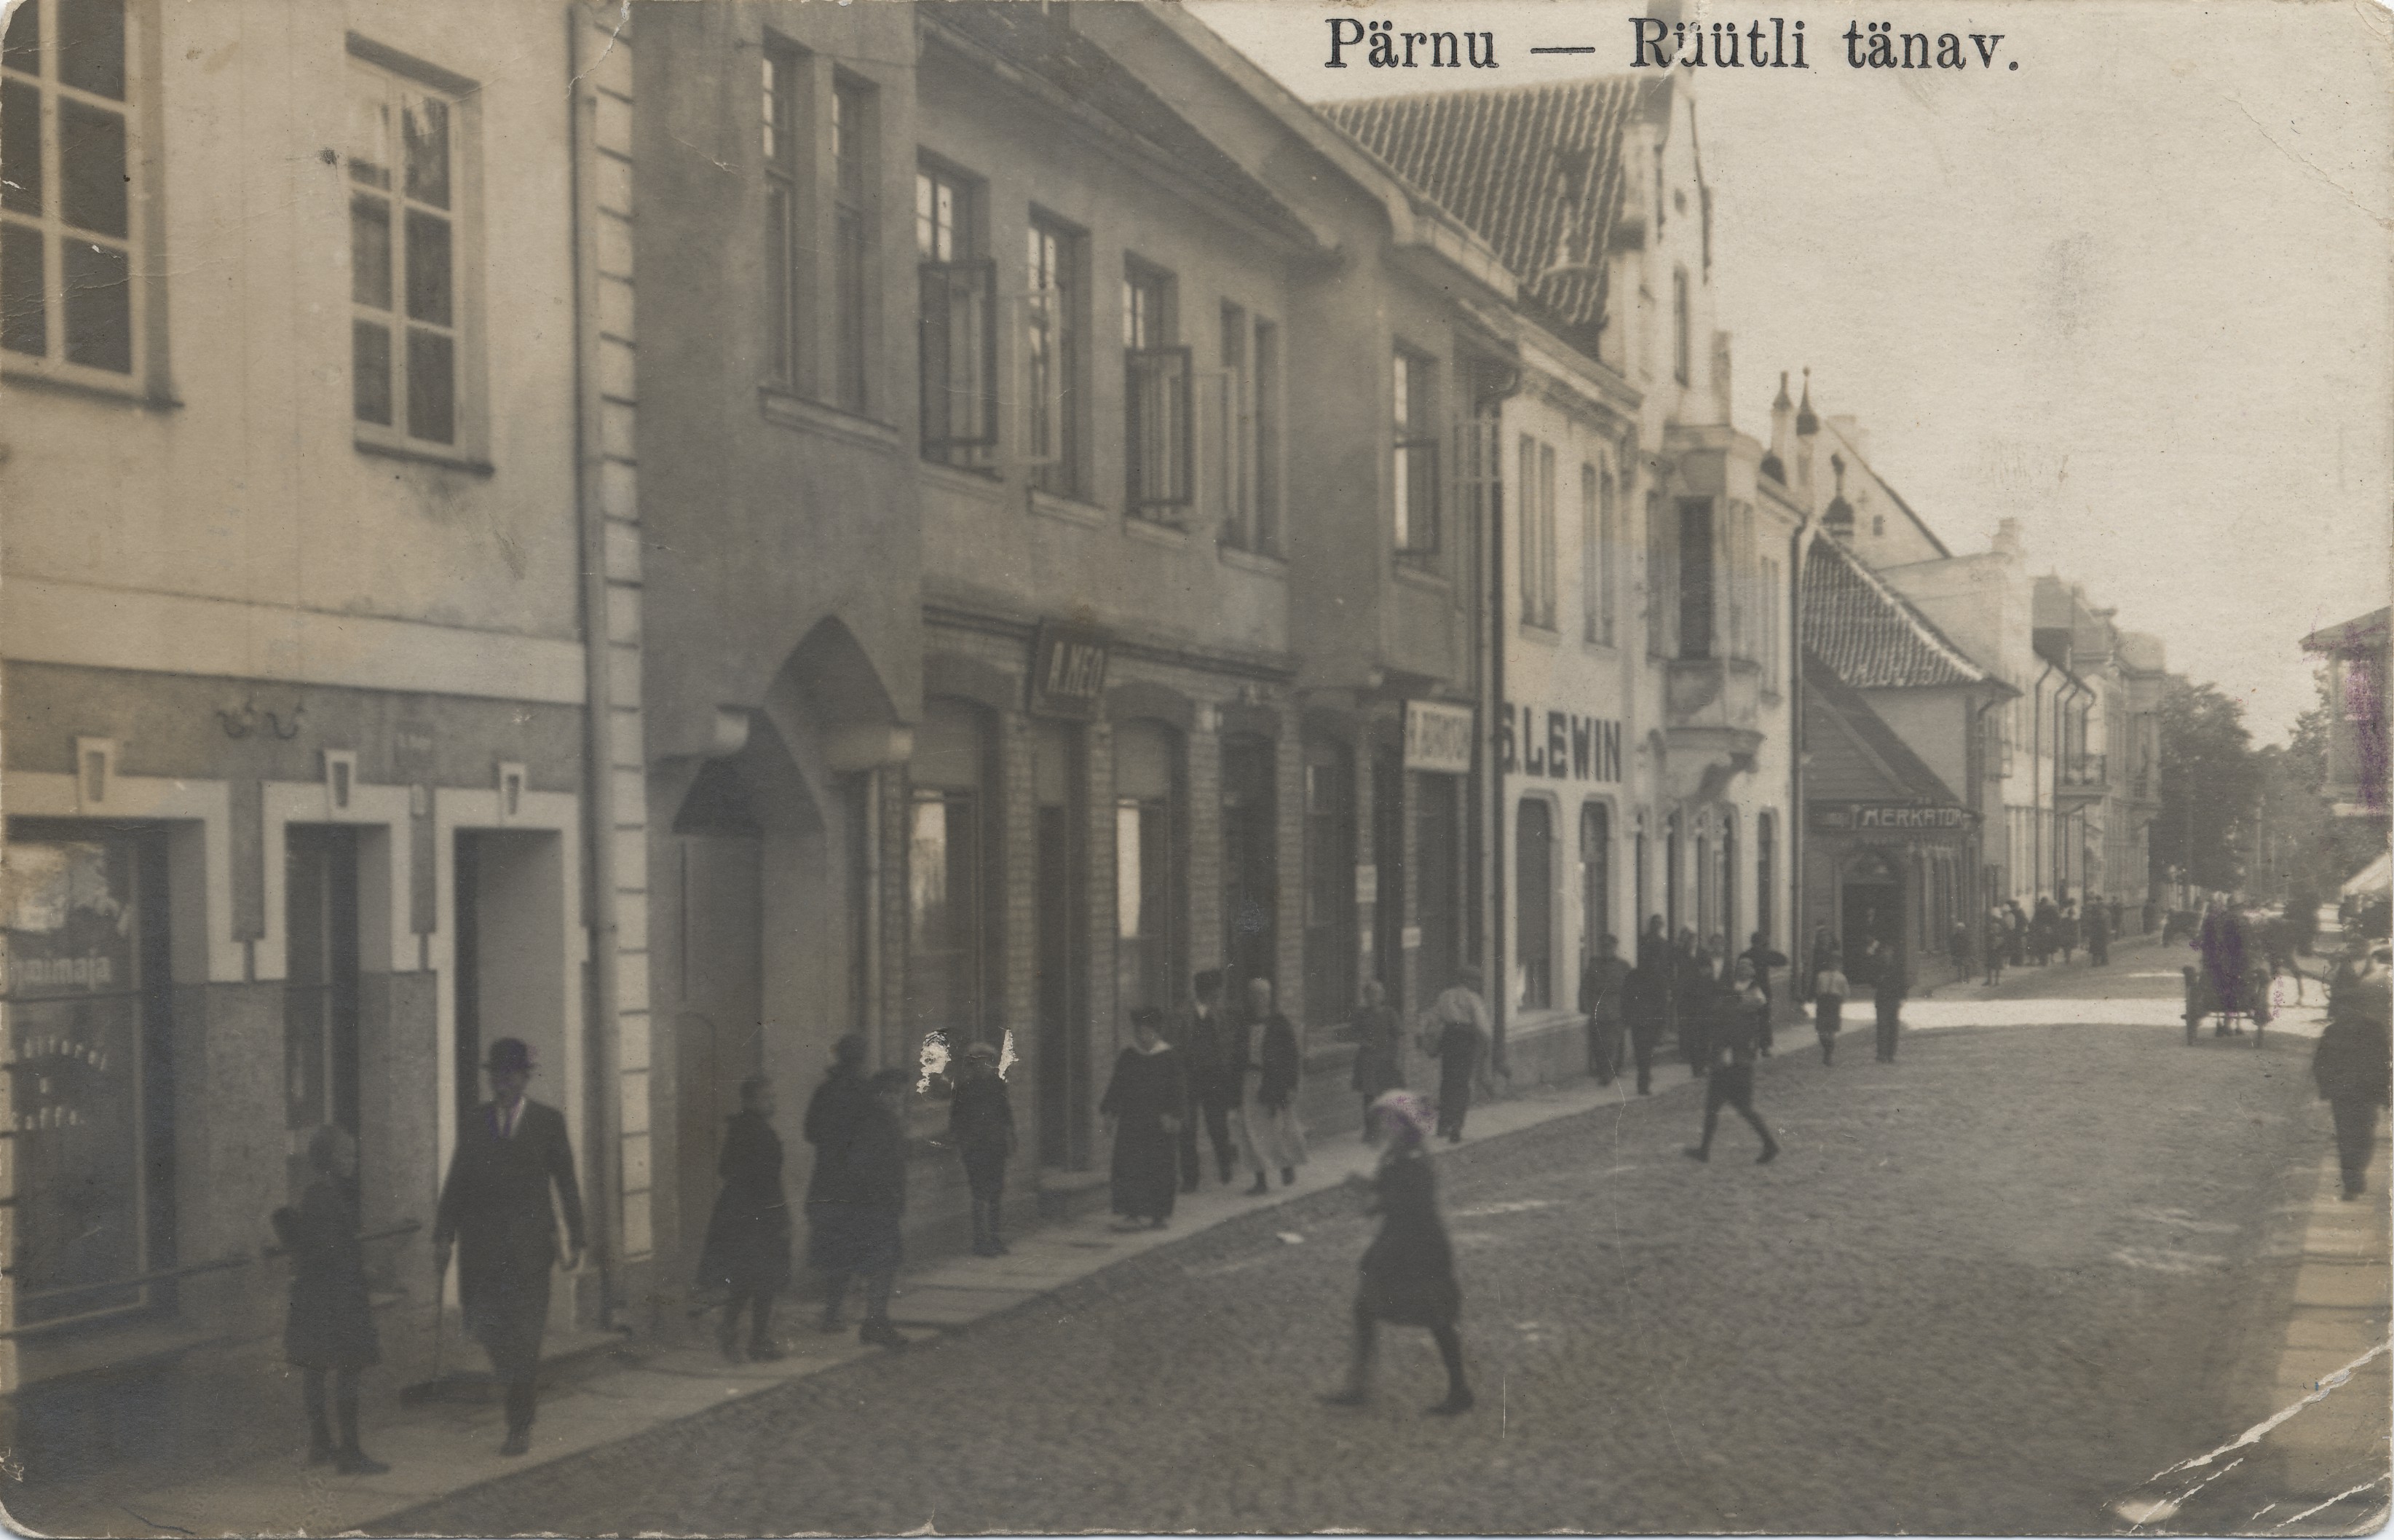 Pärnu Rüütli Street